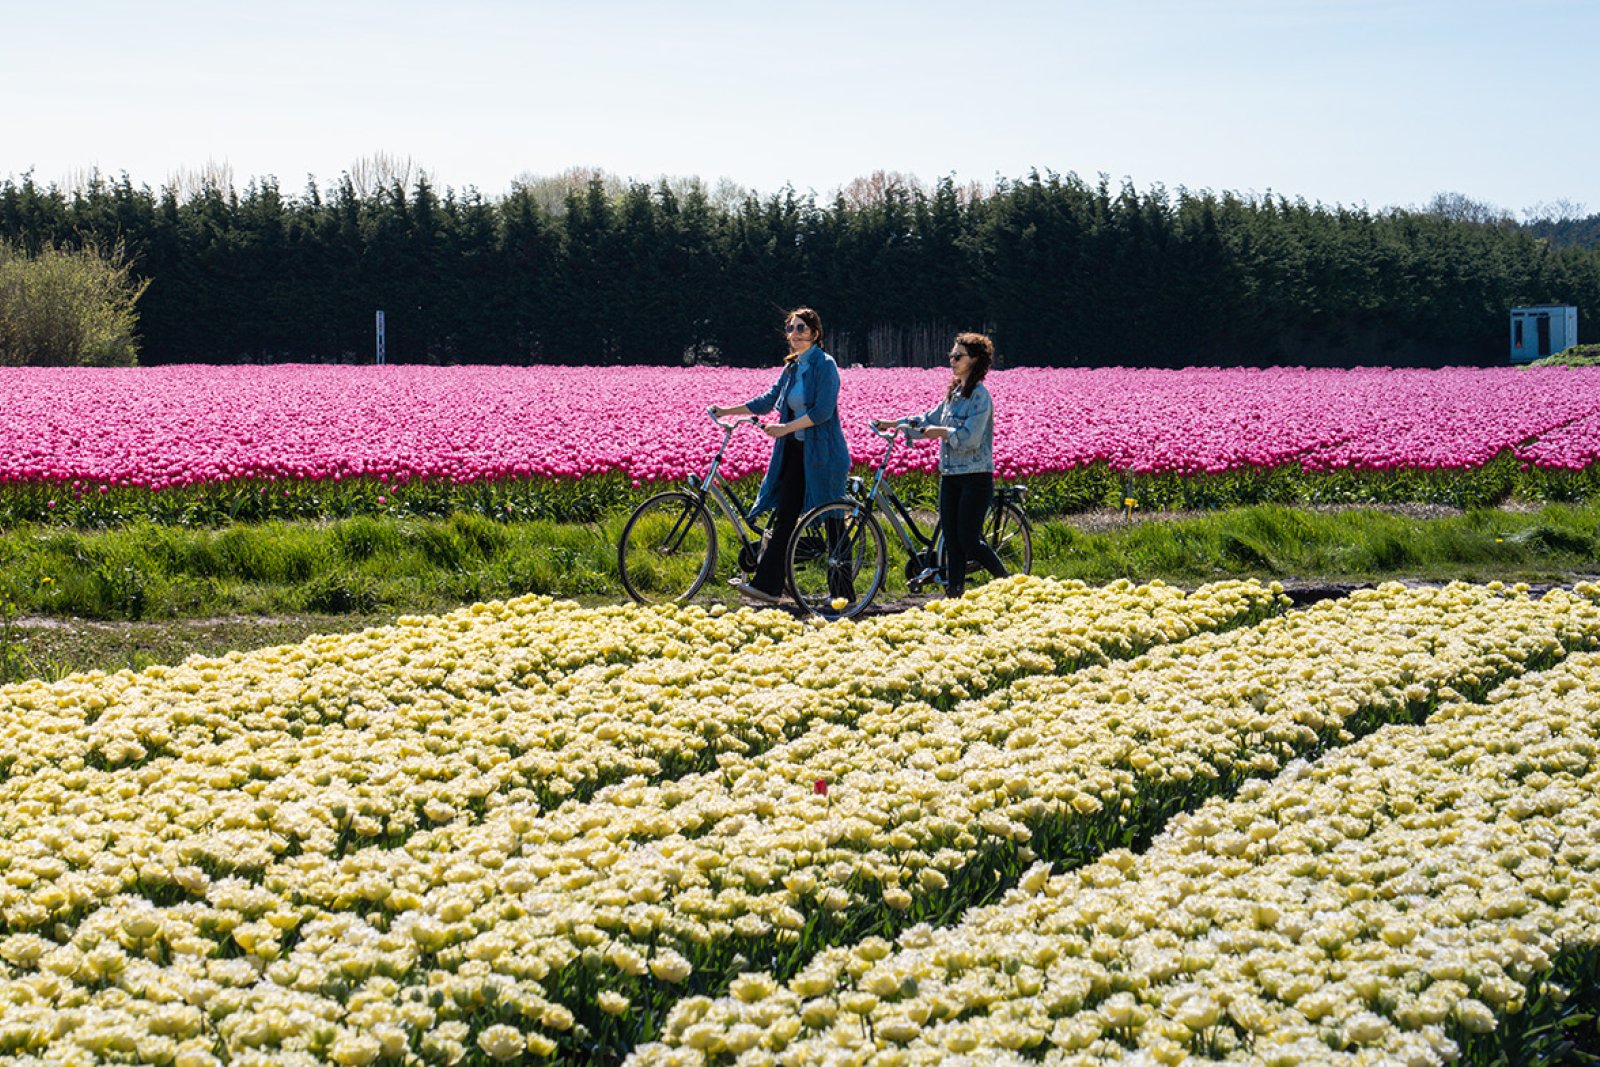 Walking by bike along the tulip fields